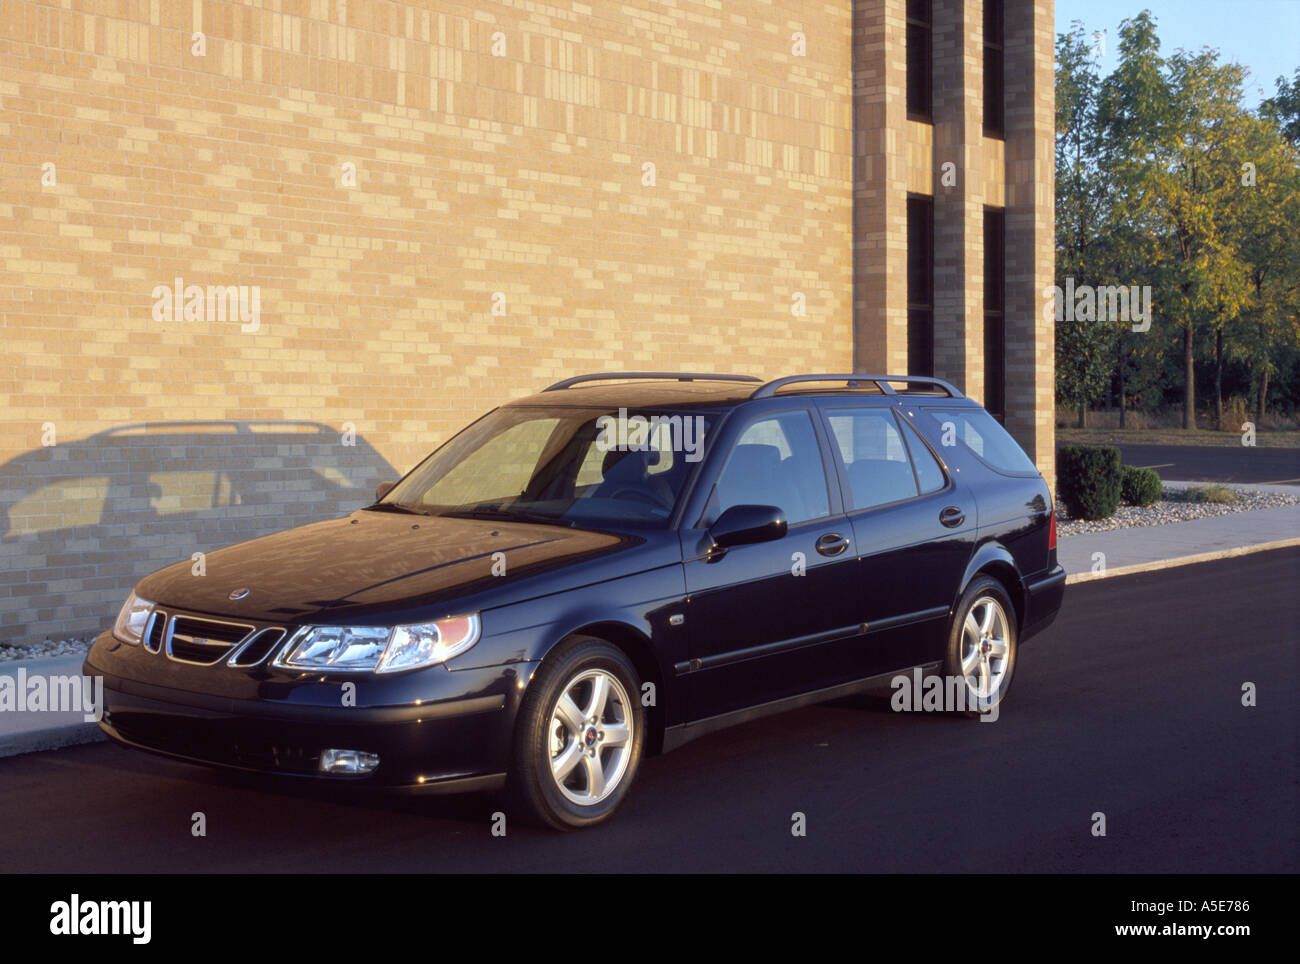 Saab 95 auto immagini e fotografie stock ad alta risoluzione - Alamy